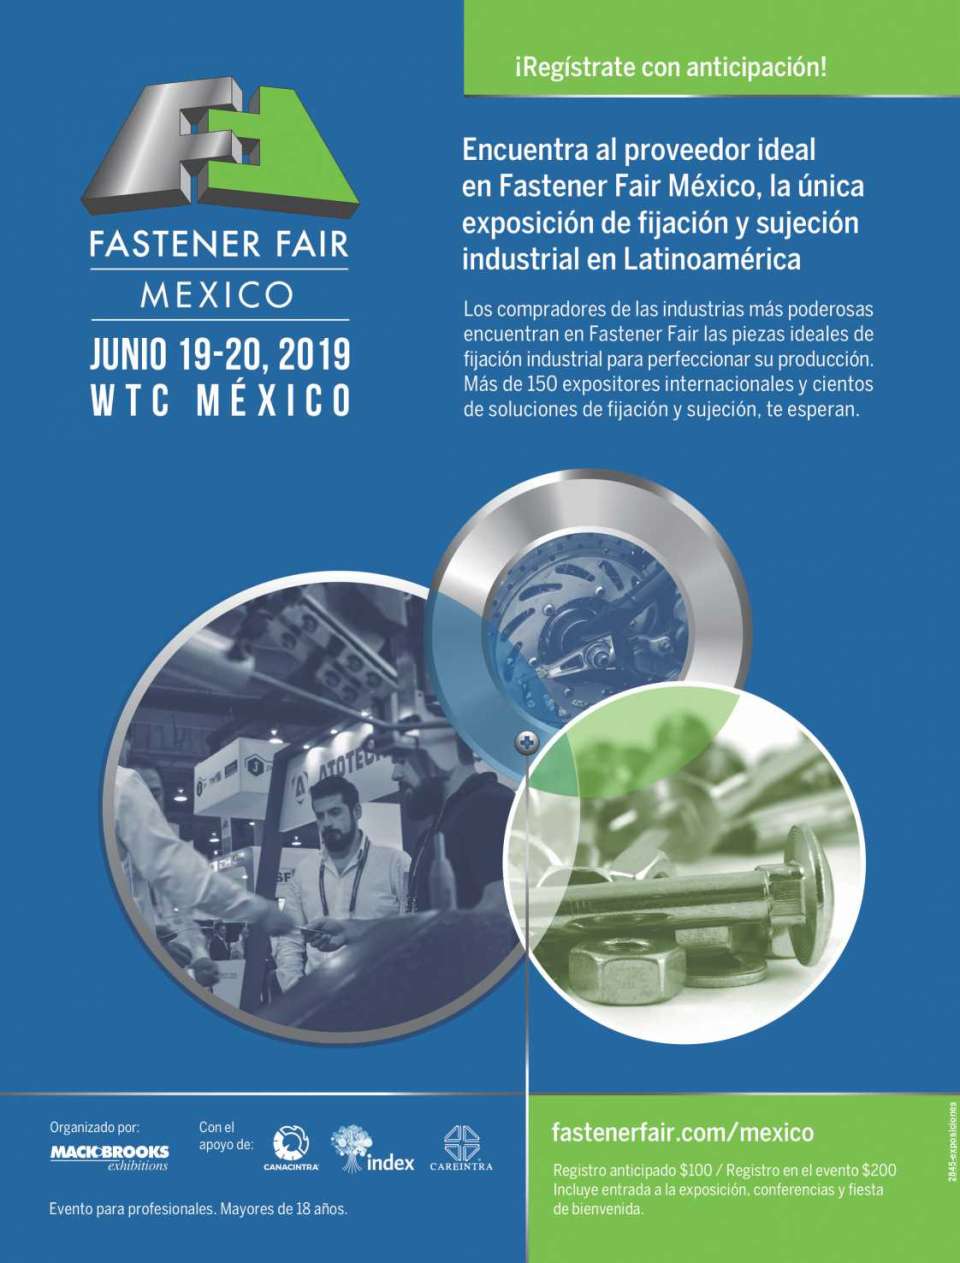 Encuentra al proveedor ideal en Fastener Fair Mexico, la unica exposicion de Fijacion y sujecion en Latinoamerica, del 19 al 20 de Junio 2019 en WTC MEXICO